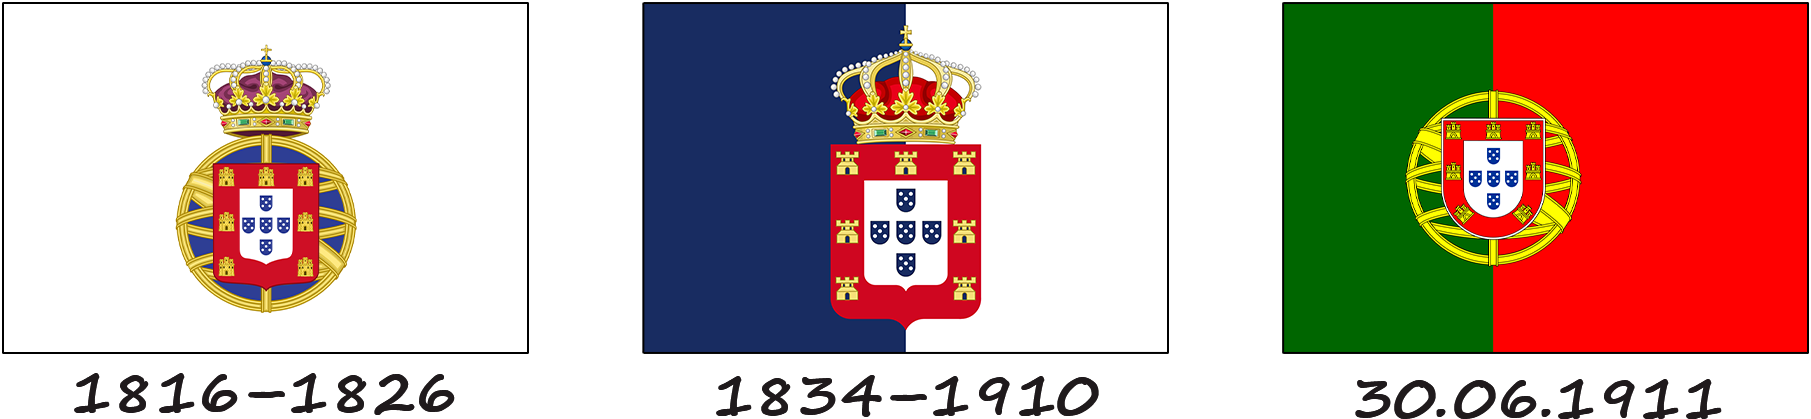 Історія прапора Португалії